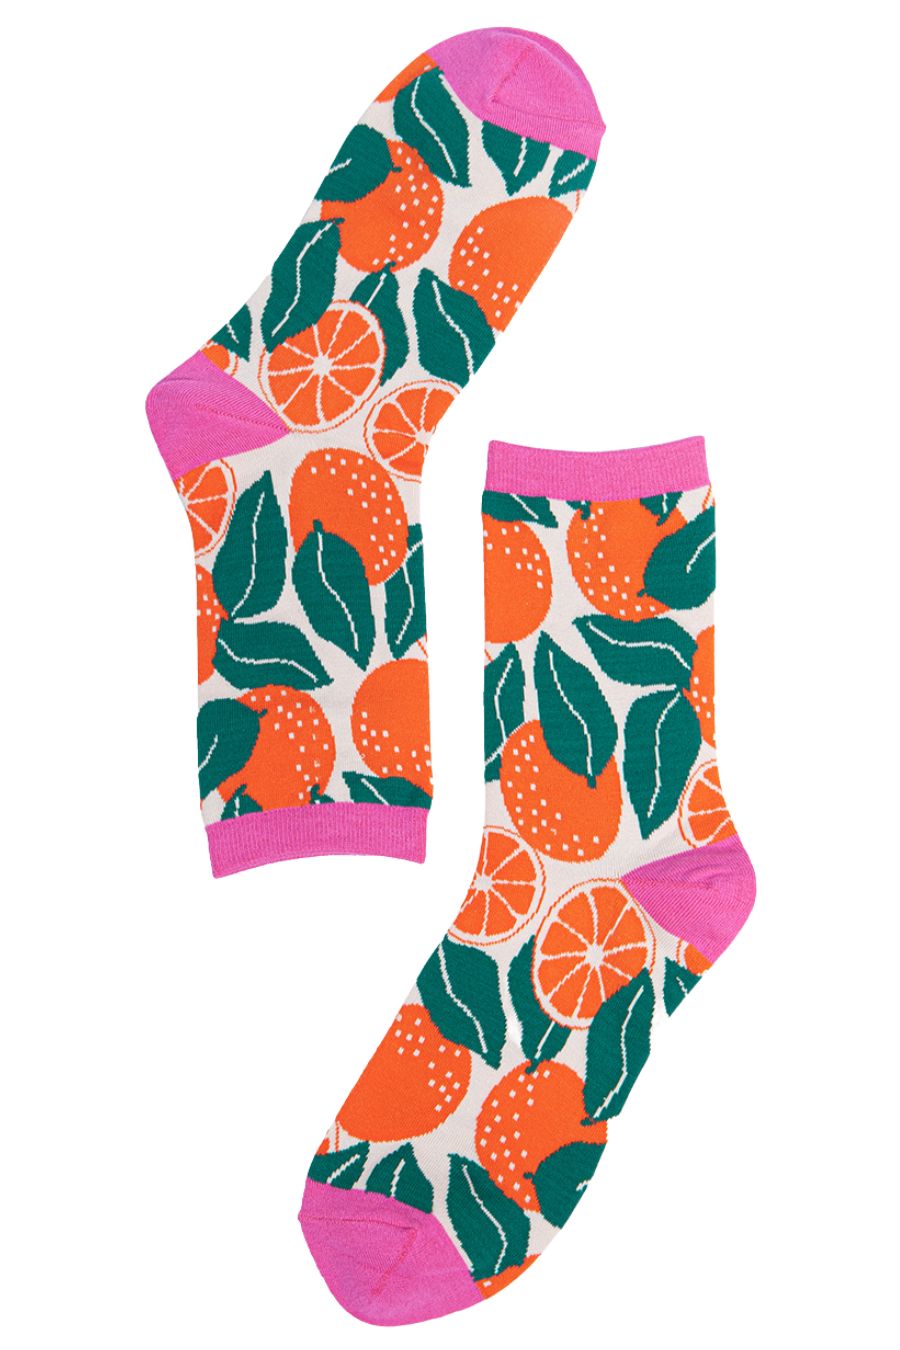 Womens Bamboo Fruit Socks Oranges Novelty Ankle Socks Pink